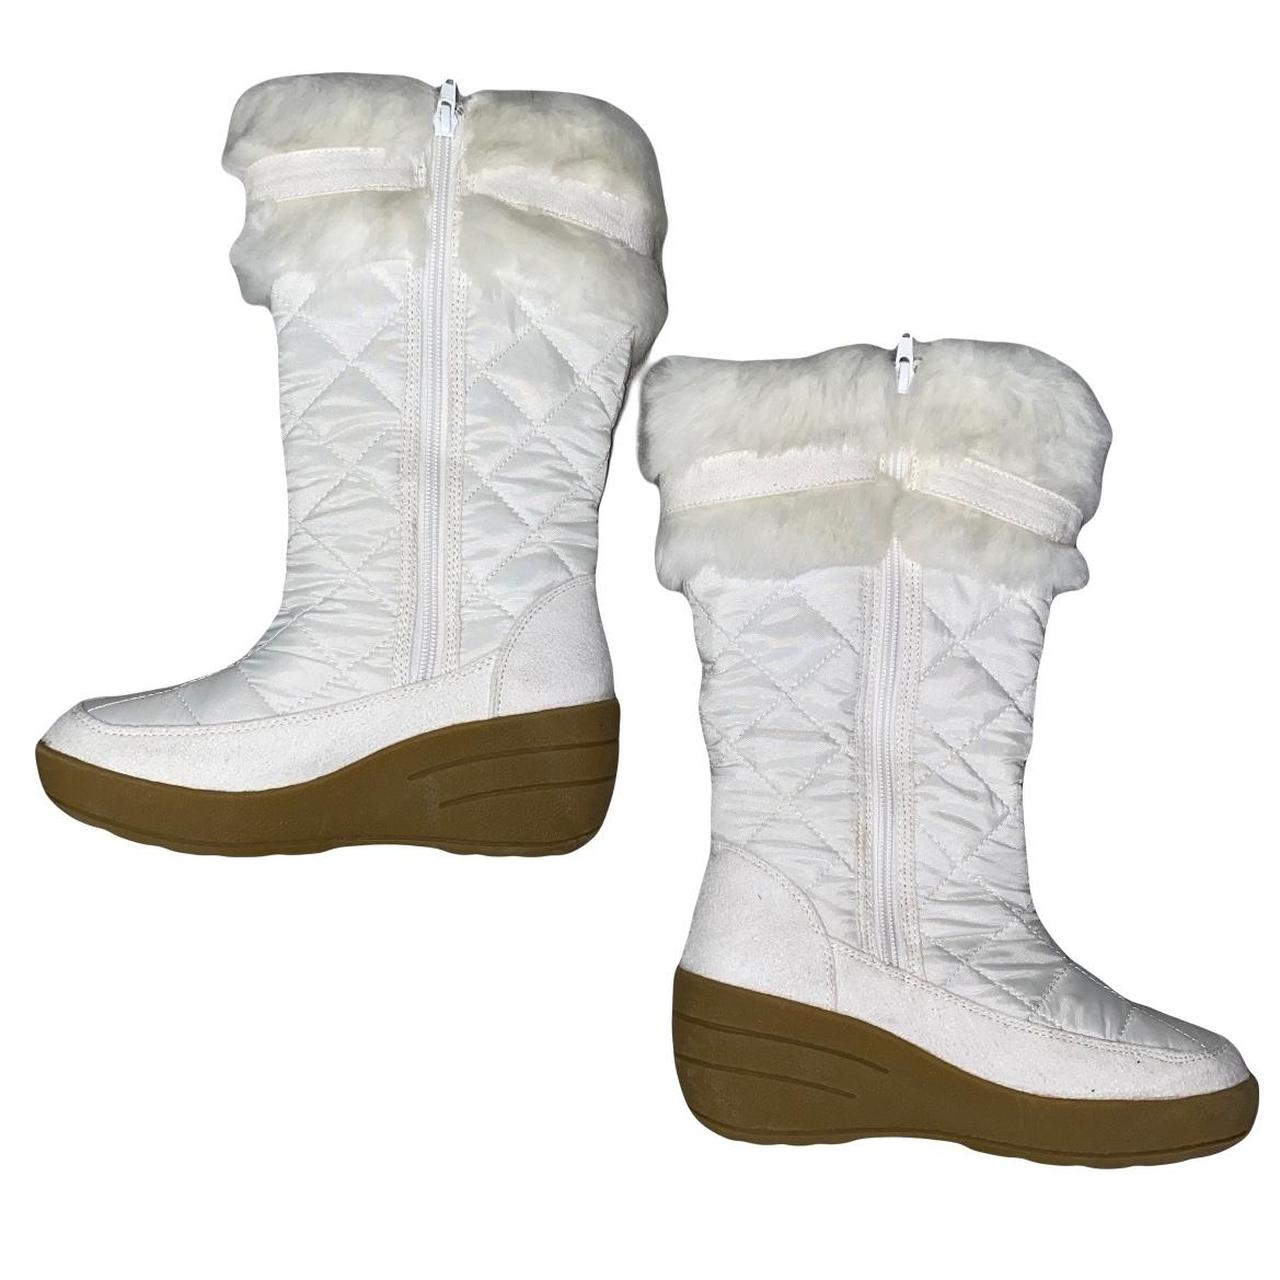 Canyon River Blues Women's White Boots (2)